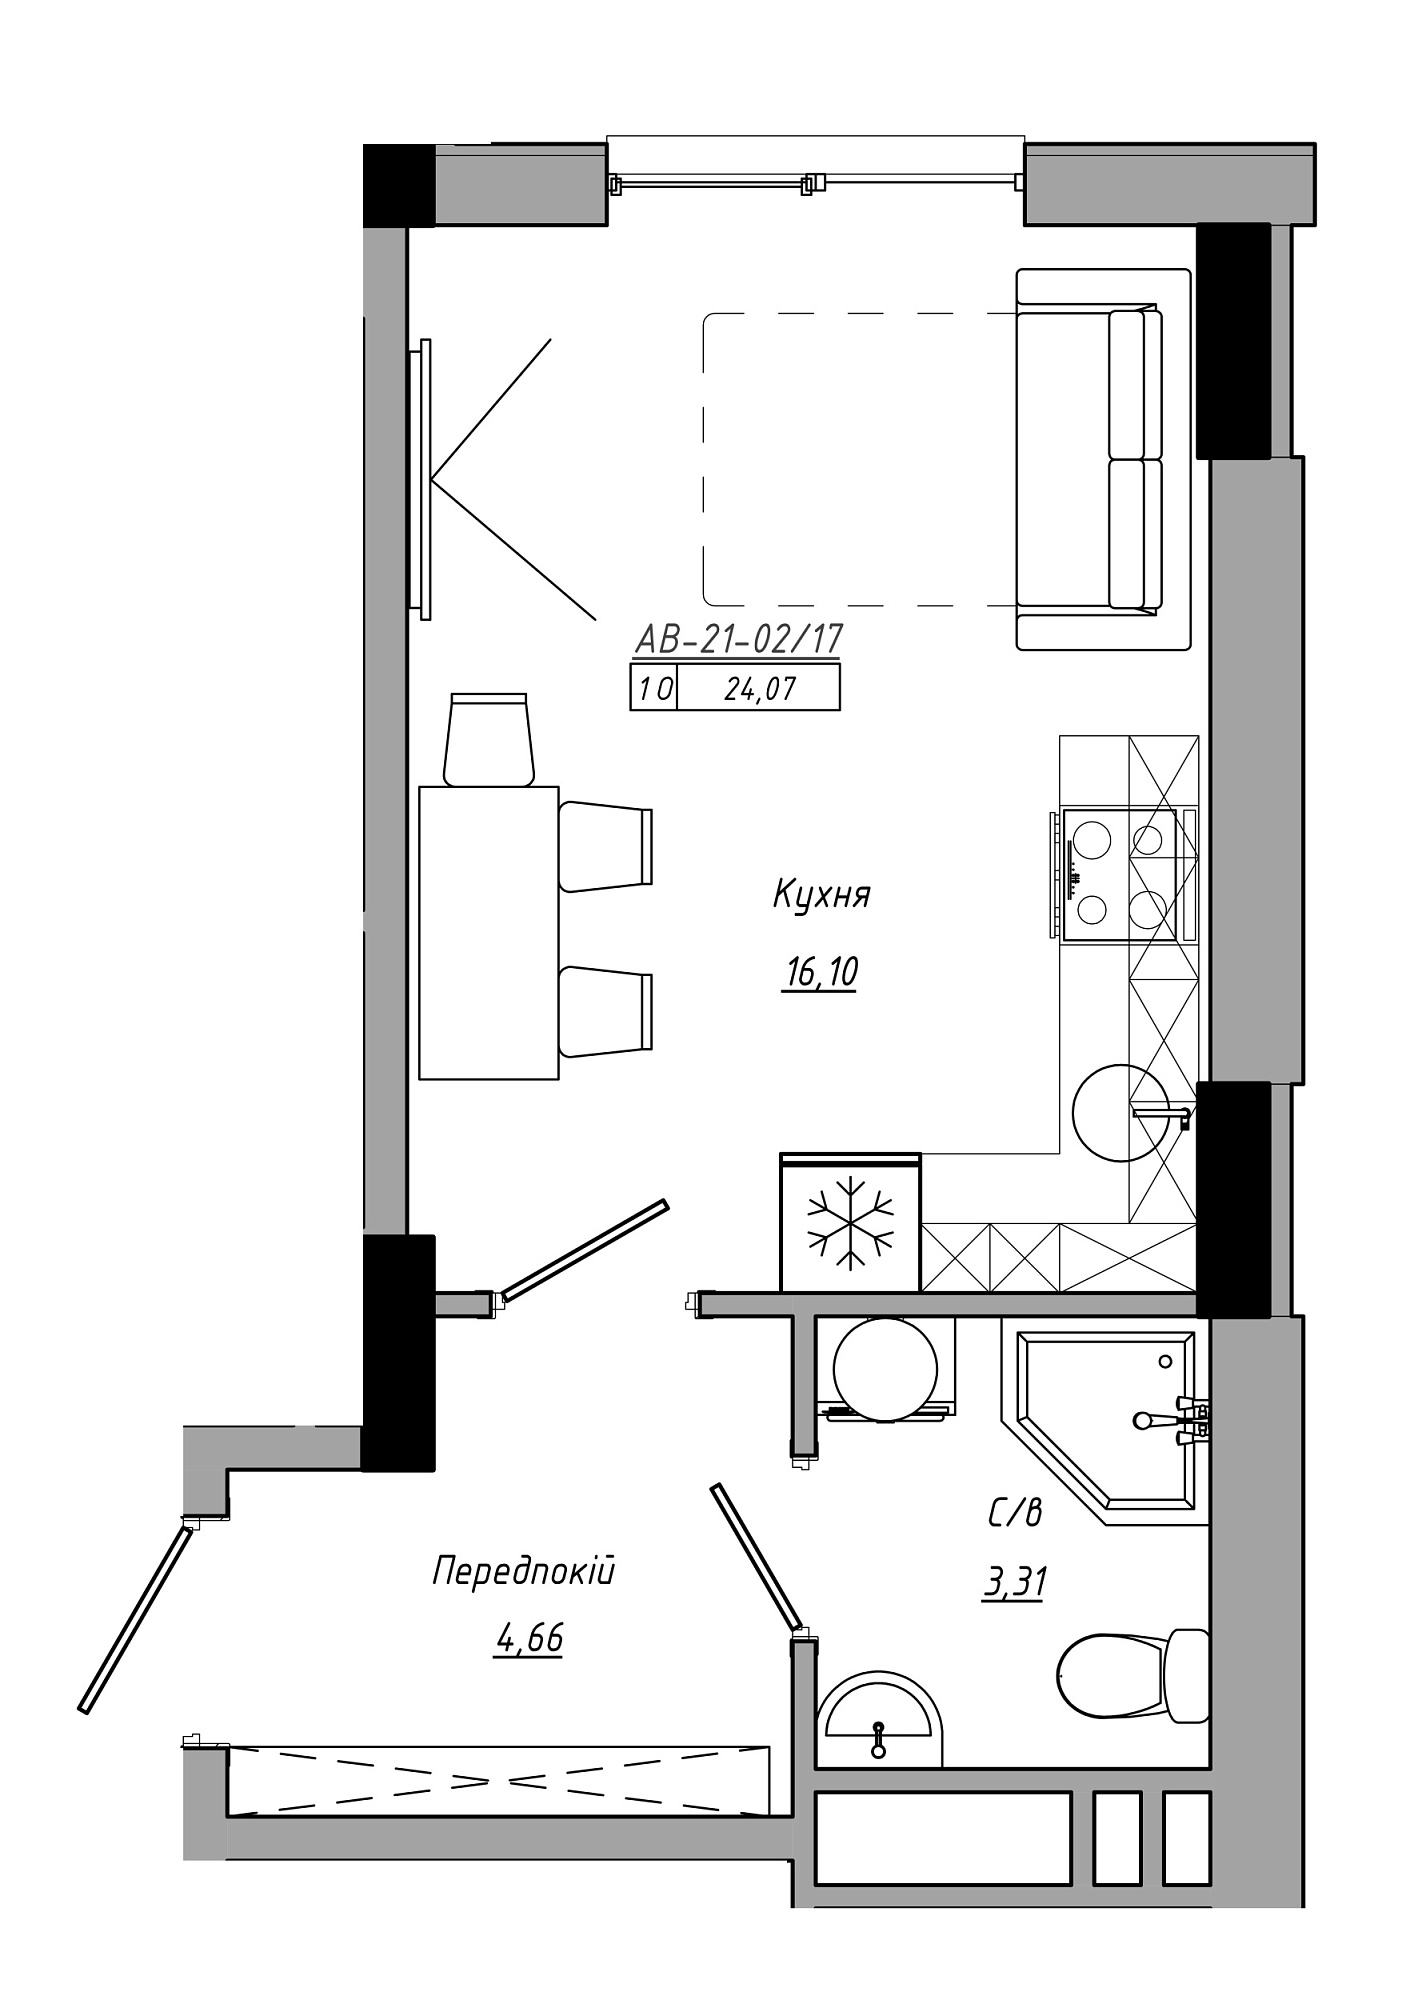 Планування Smart-квартира площею 24.07м2, AB-21-02/00017.